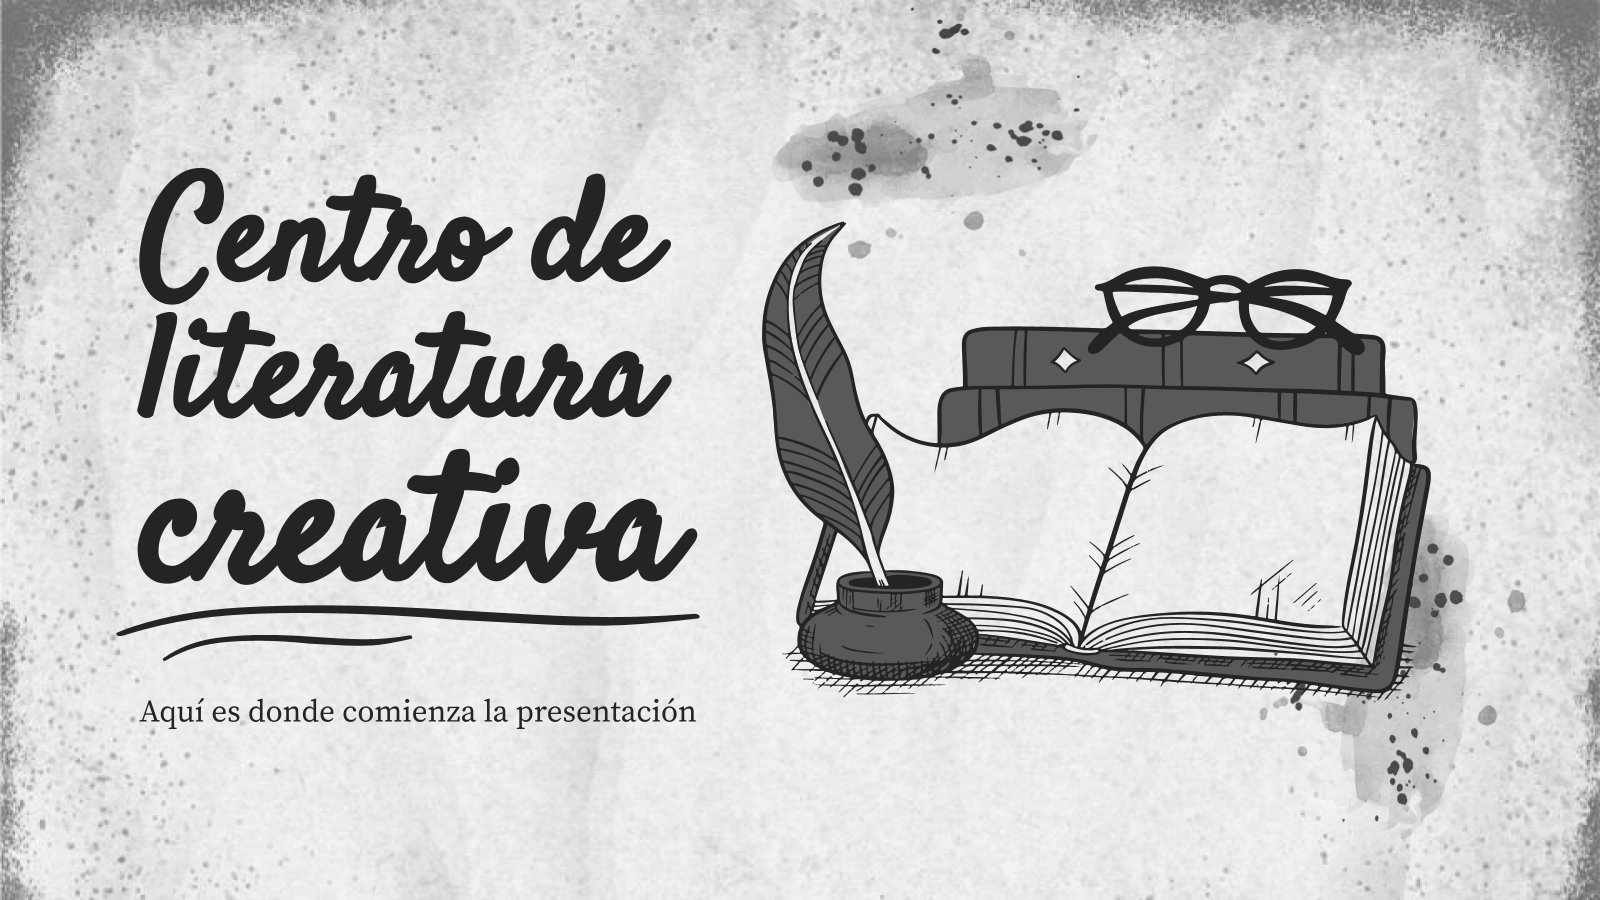 Modelo de apresentação Centro de literatura criativa espanhola